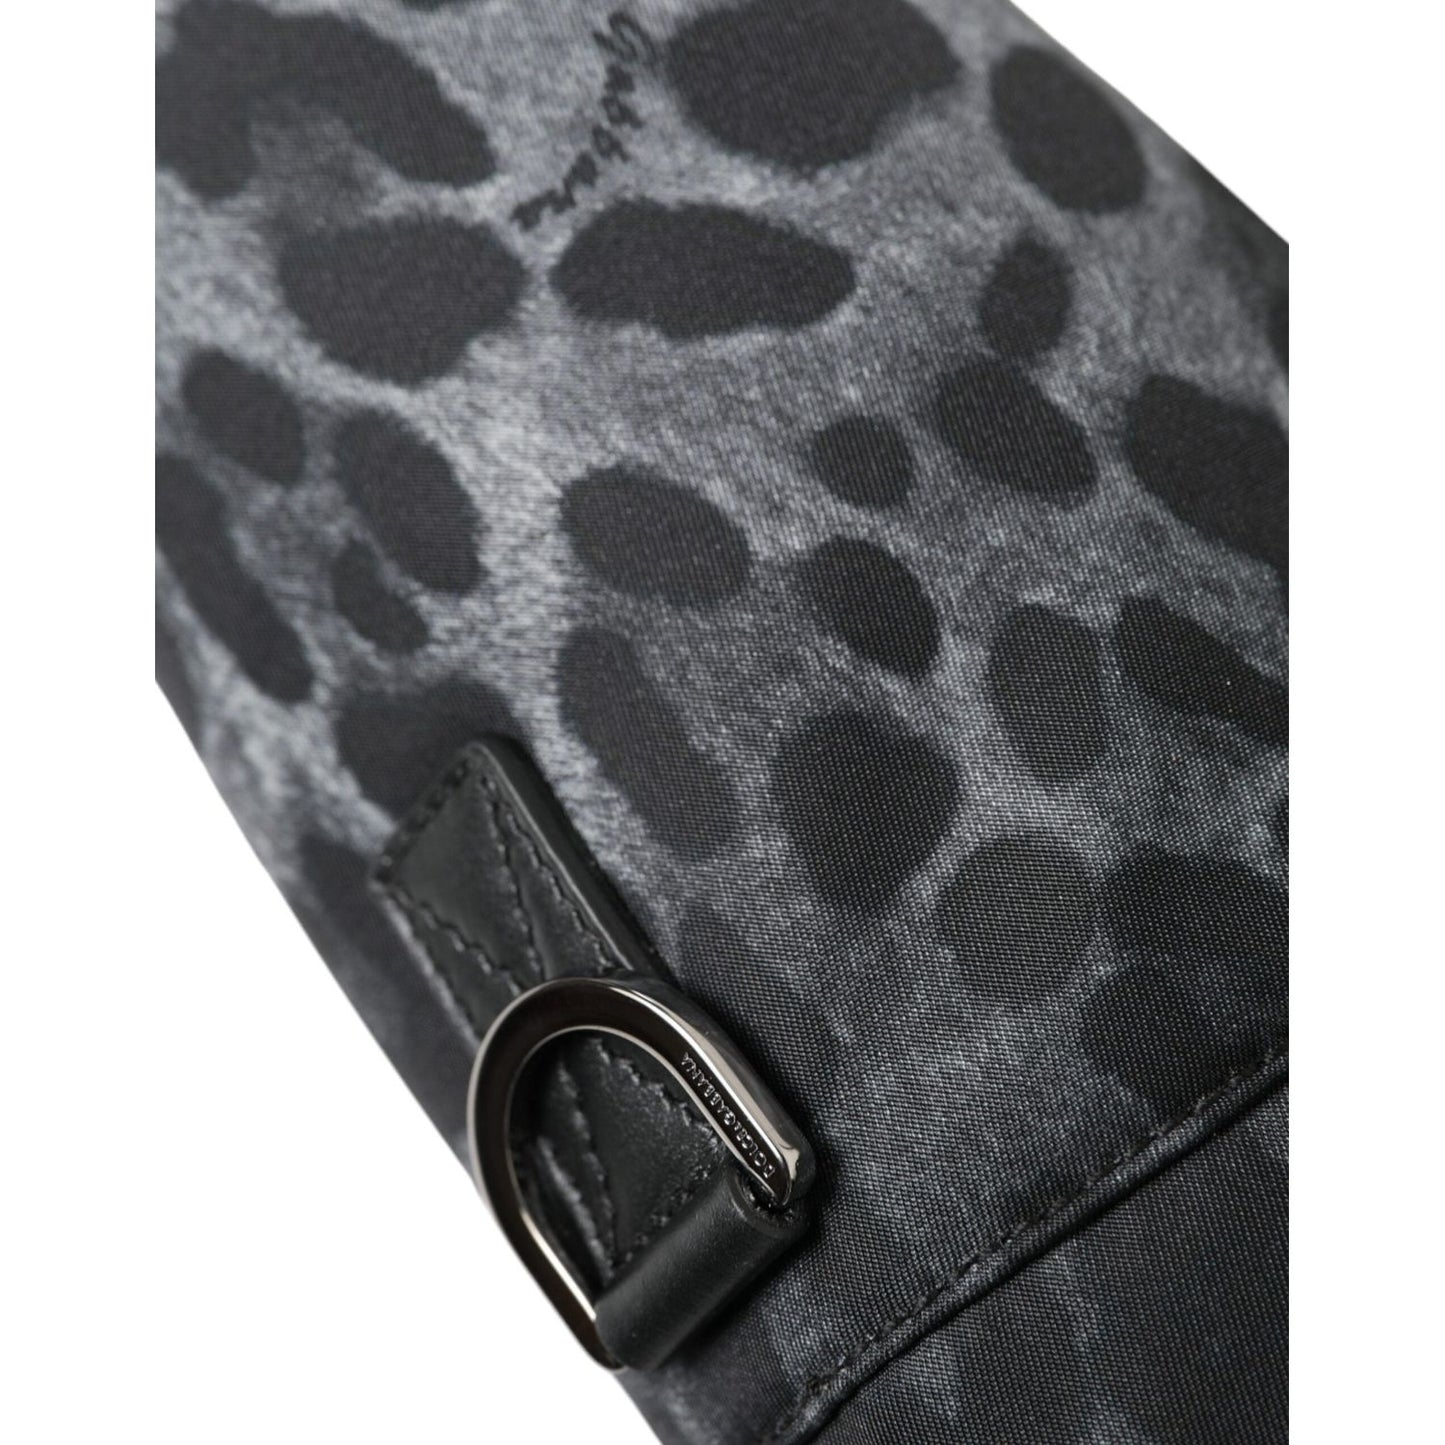 Dolce & Gabbana Chic Leopard Print Round Bottle Cage black-leopard-round-slim-tote-bottle-cage-bag